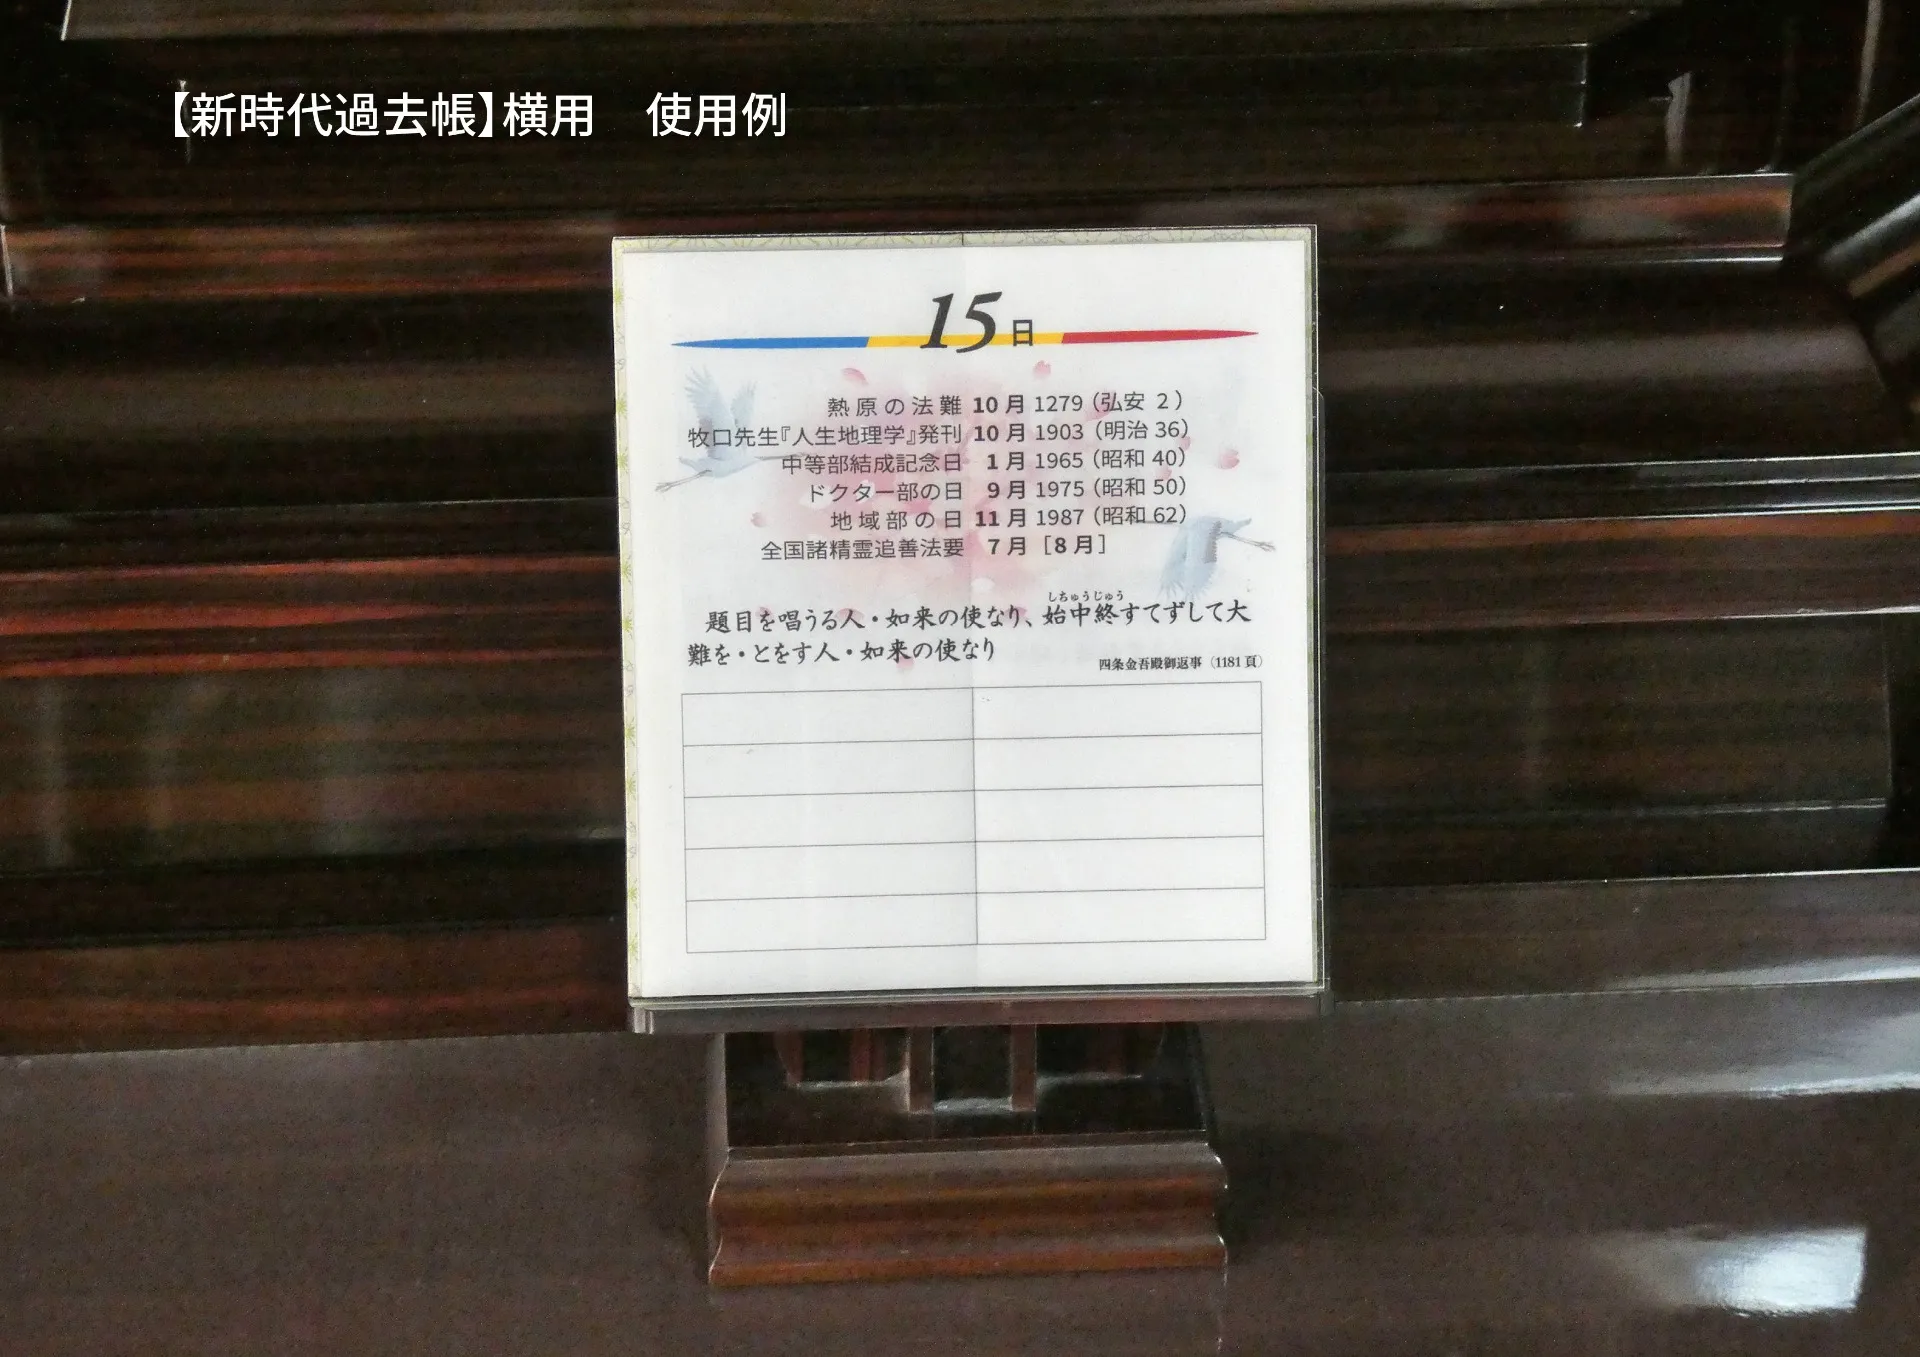 新時代過去帳【横書き用】［和紙］ ¥3,750 税込